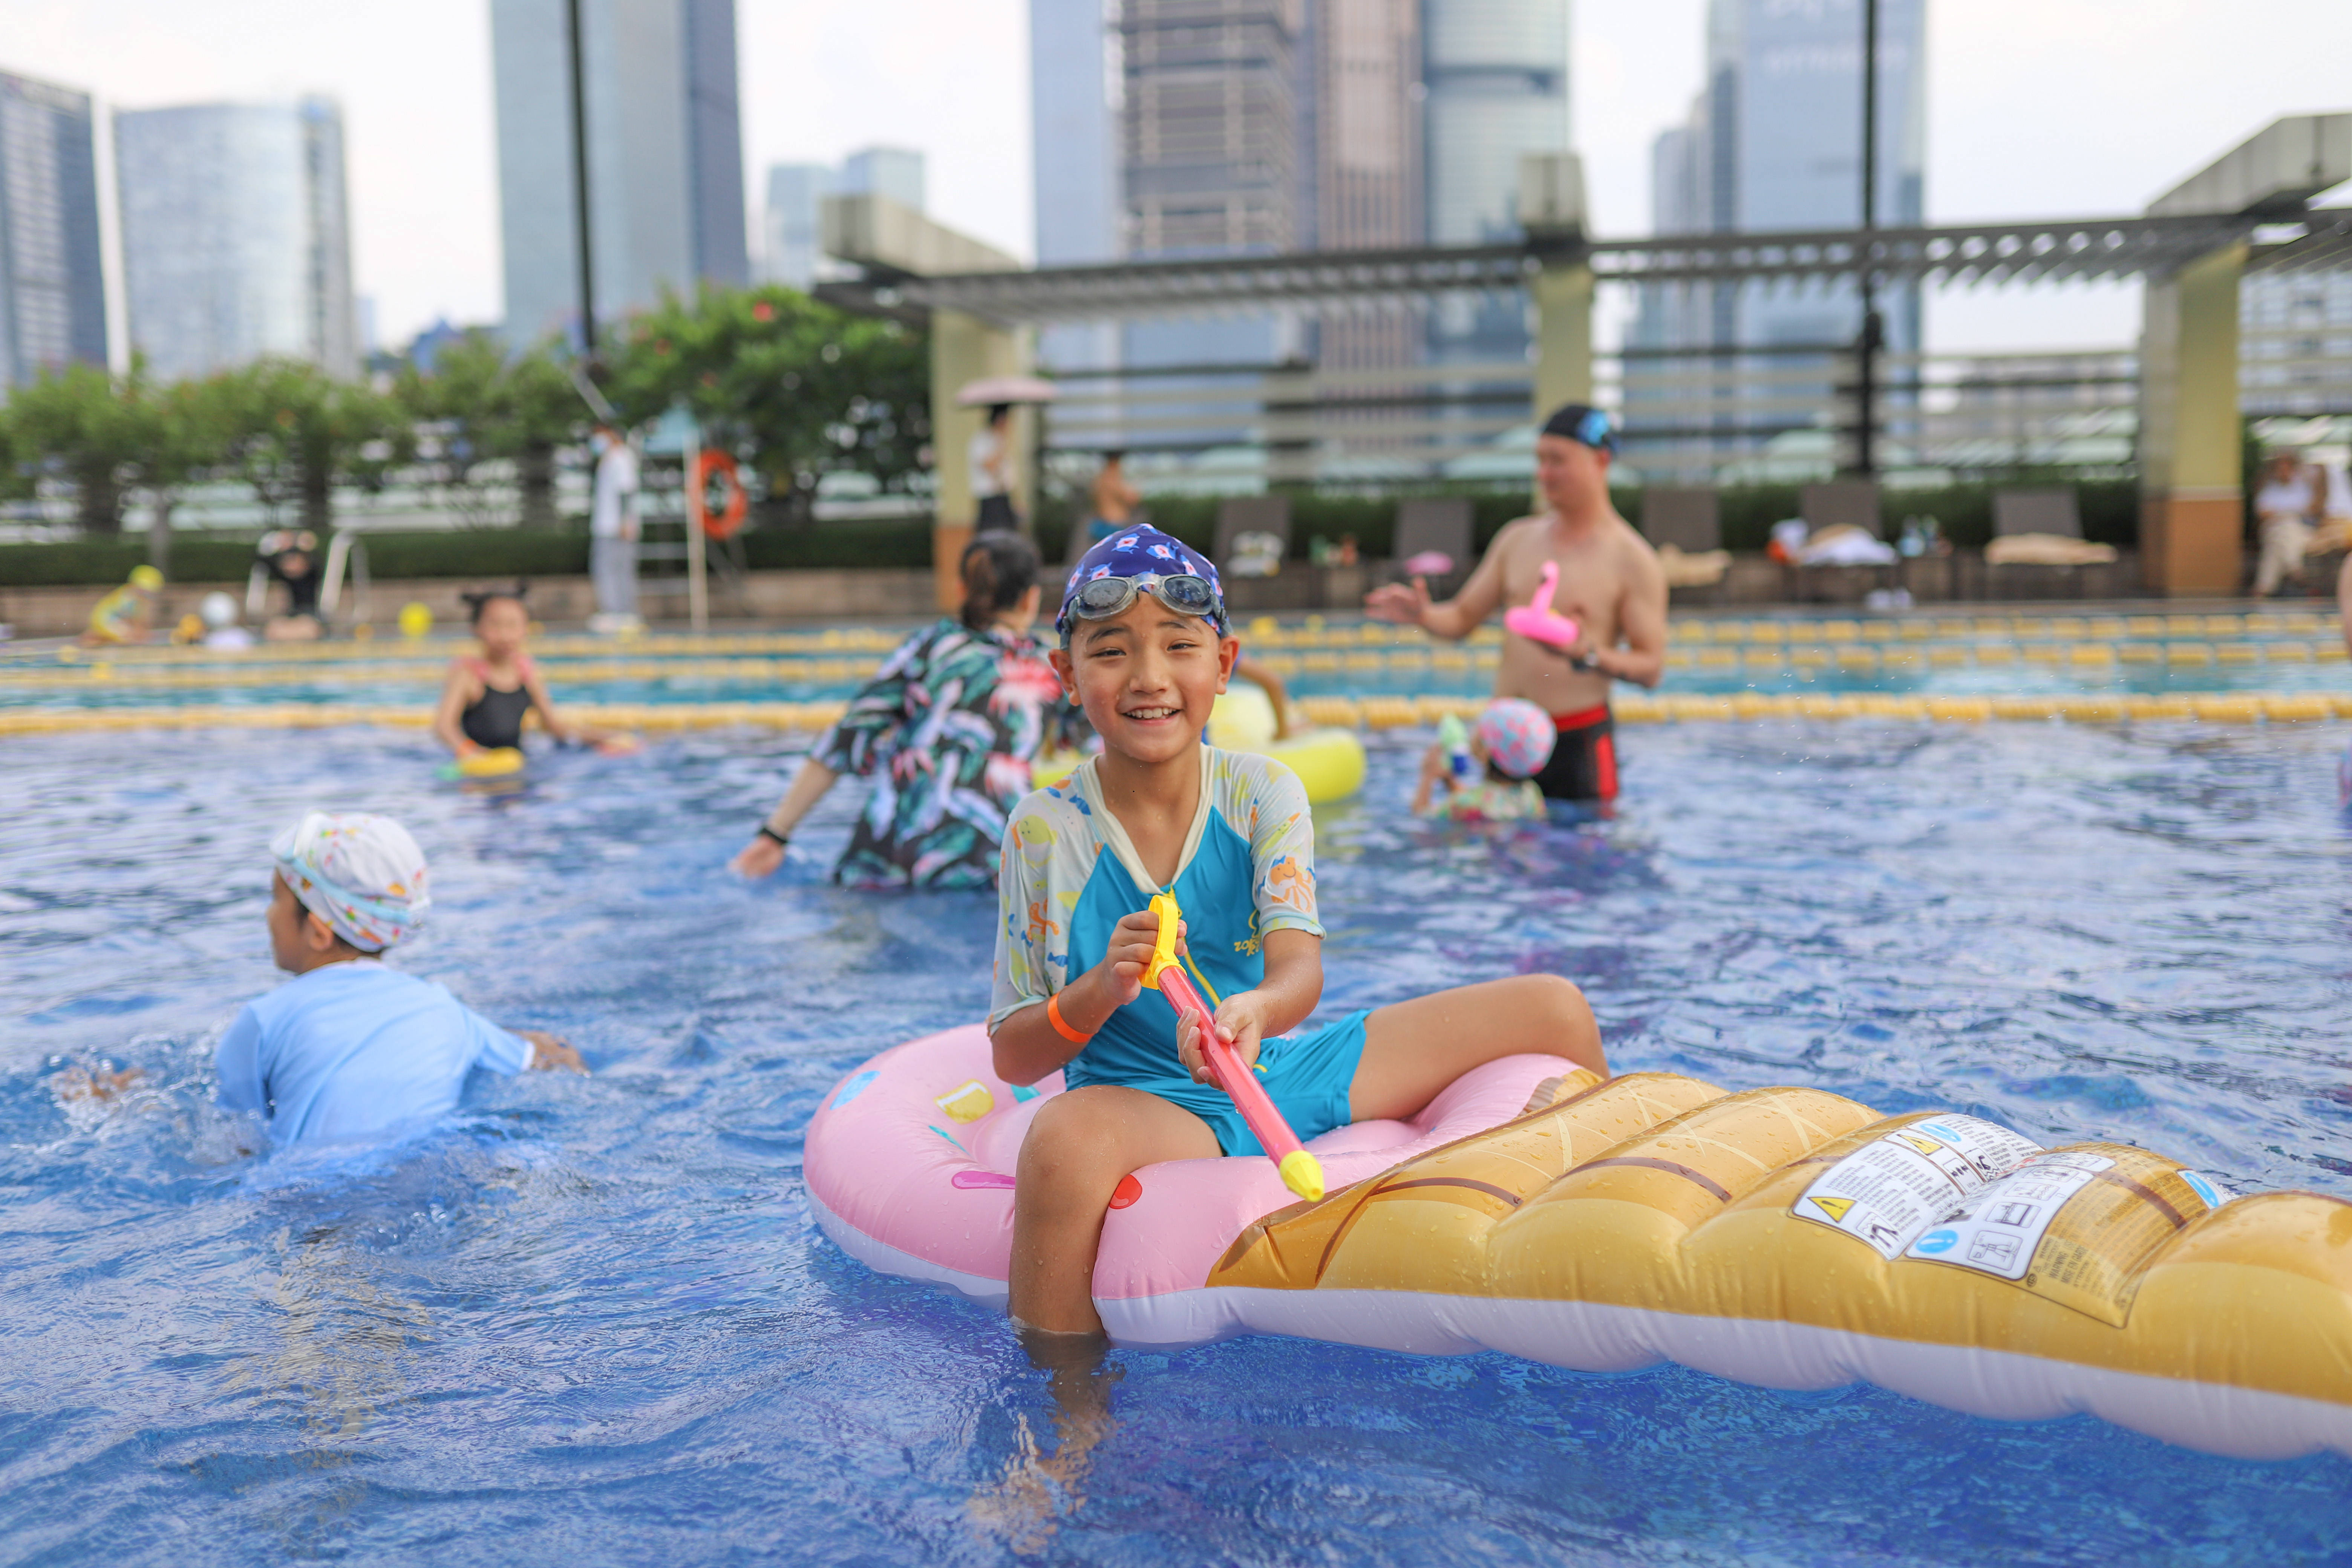 曼谷最佳泳池派对趴推荐：SO Pool Party和Westin Pool Party。 | 泰趣味